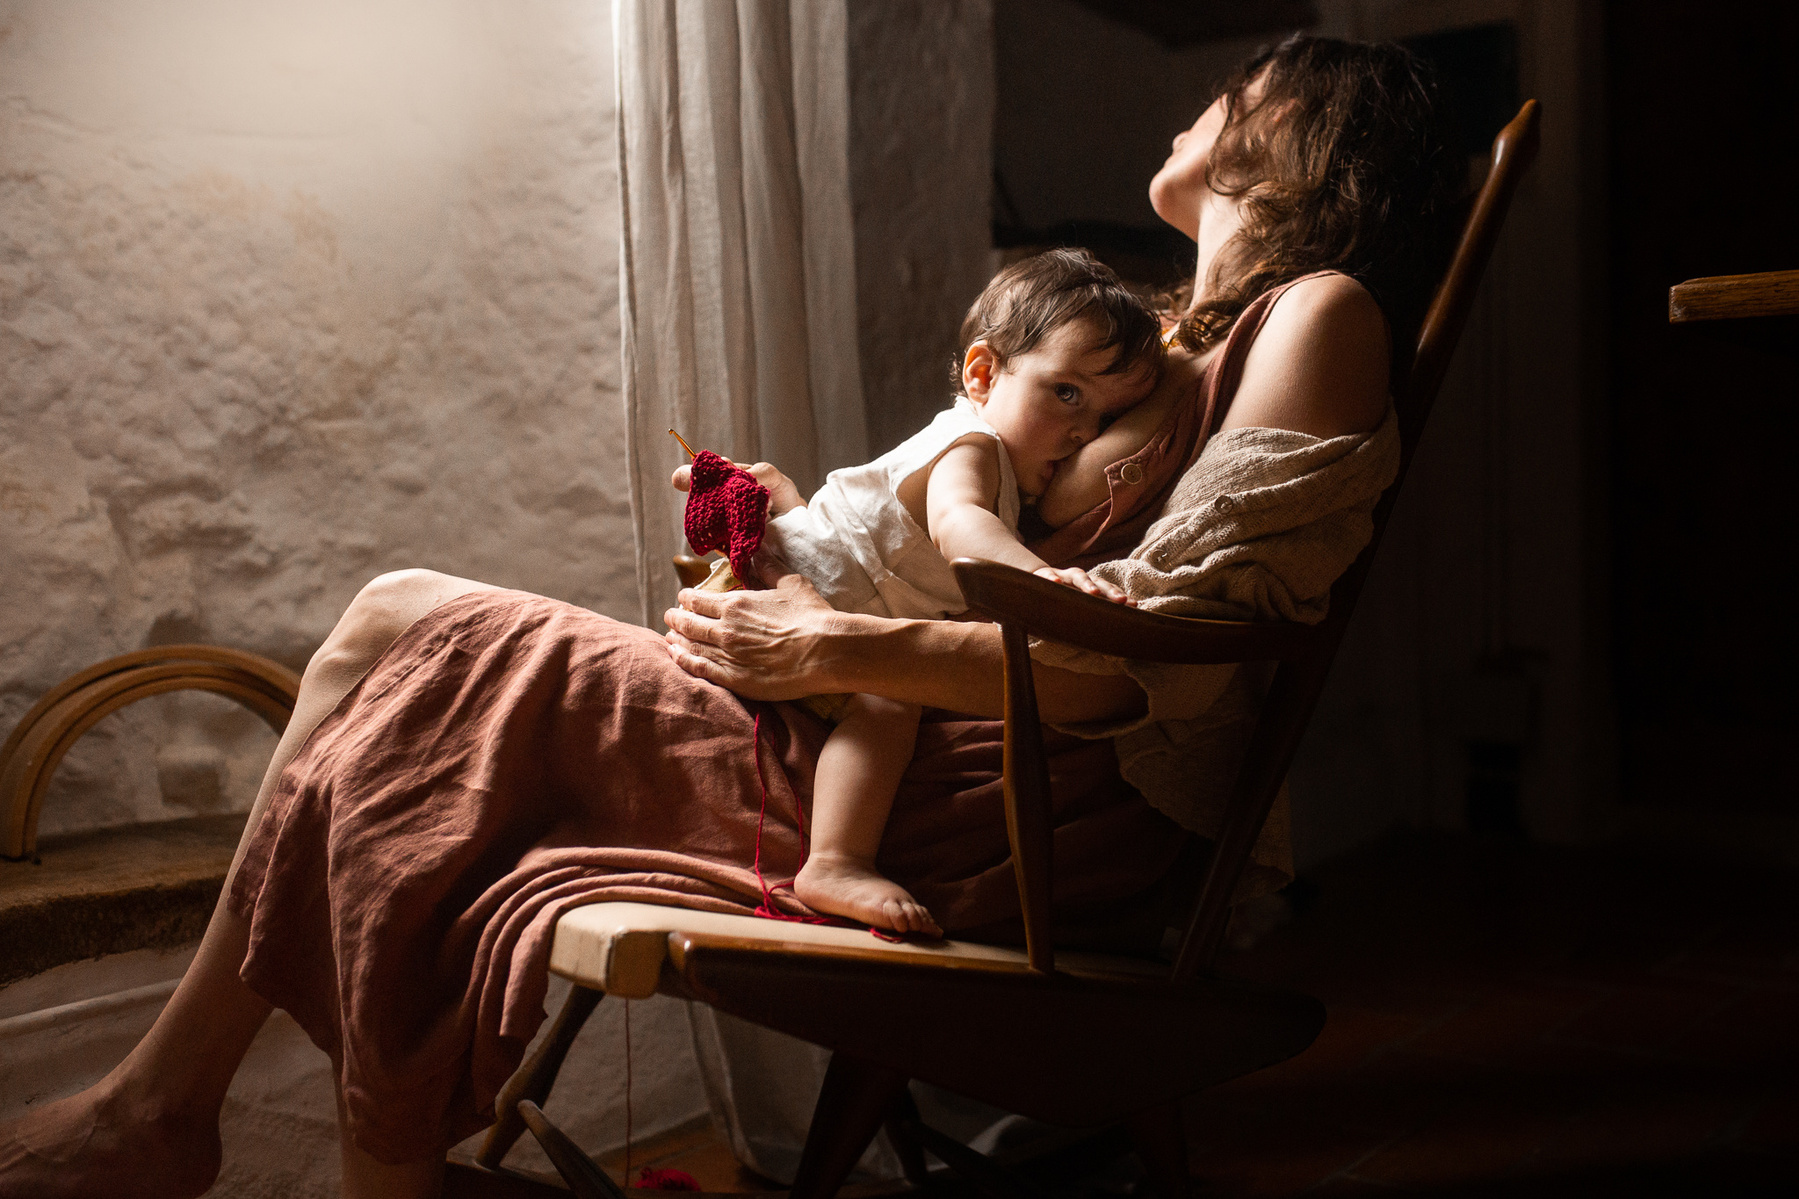 Madre reposando en una silla amamantando a su bebe, cerca de una ventana, plà del Estany, cataluña, españa